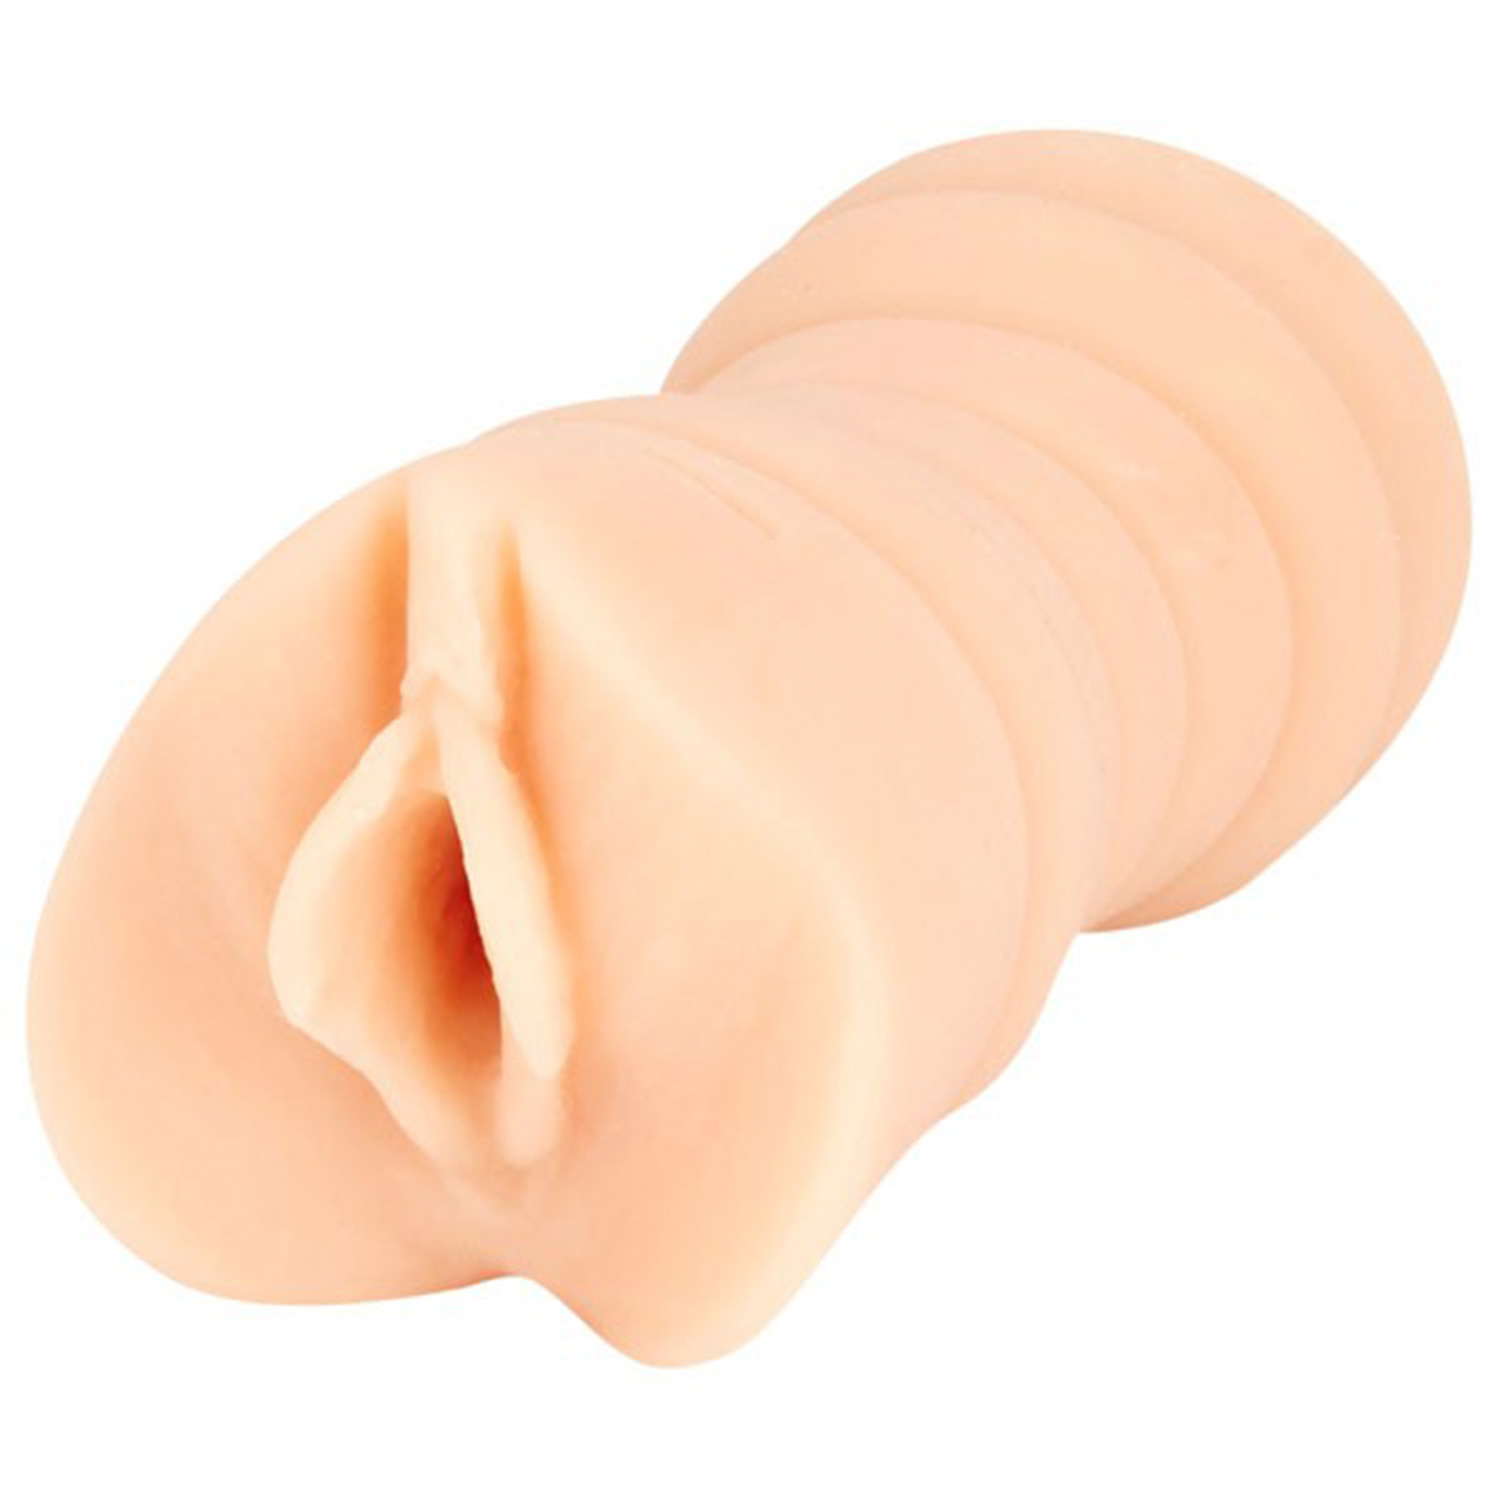 Sasha Grey UR3 Cream Pie Lomme Vagina - Nude